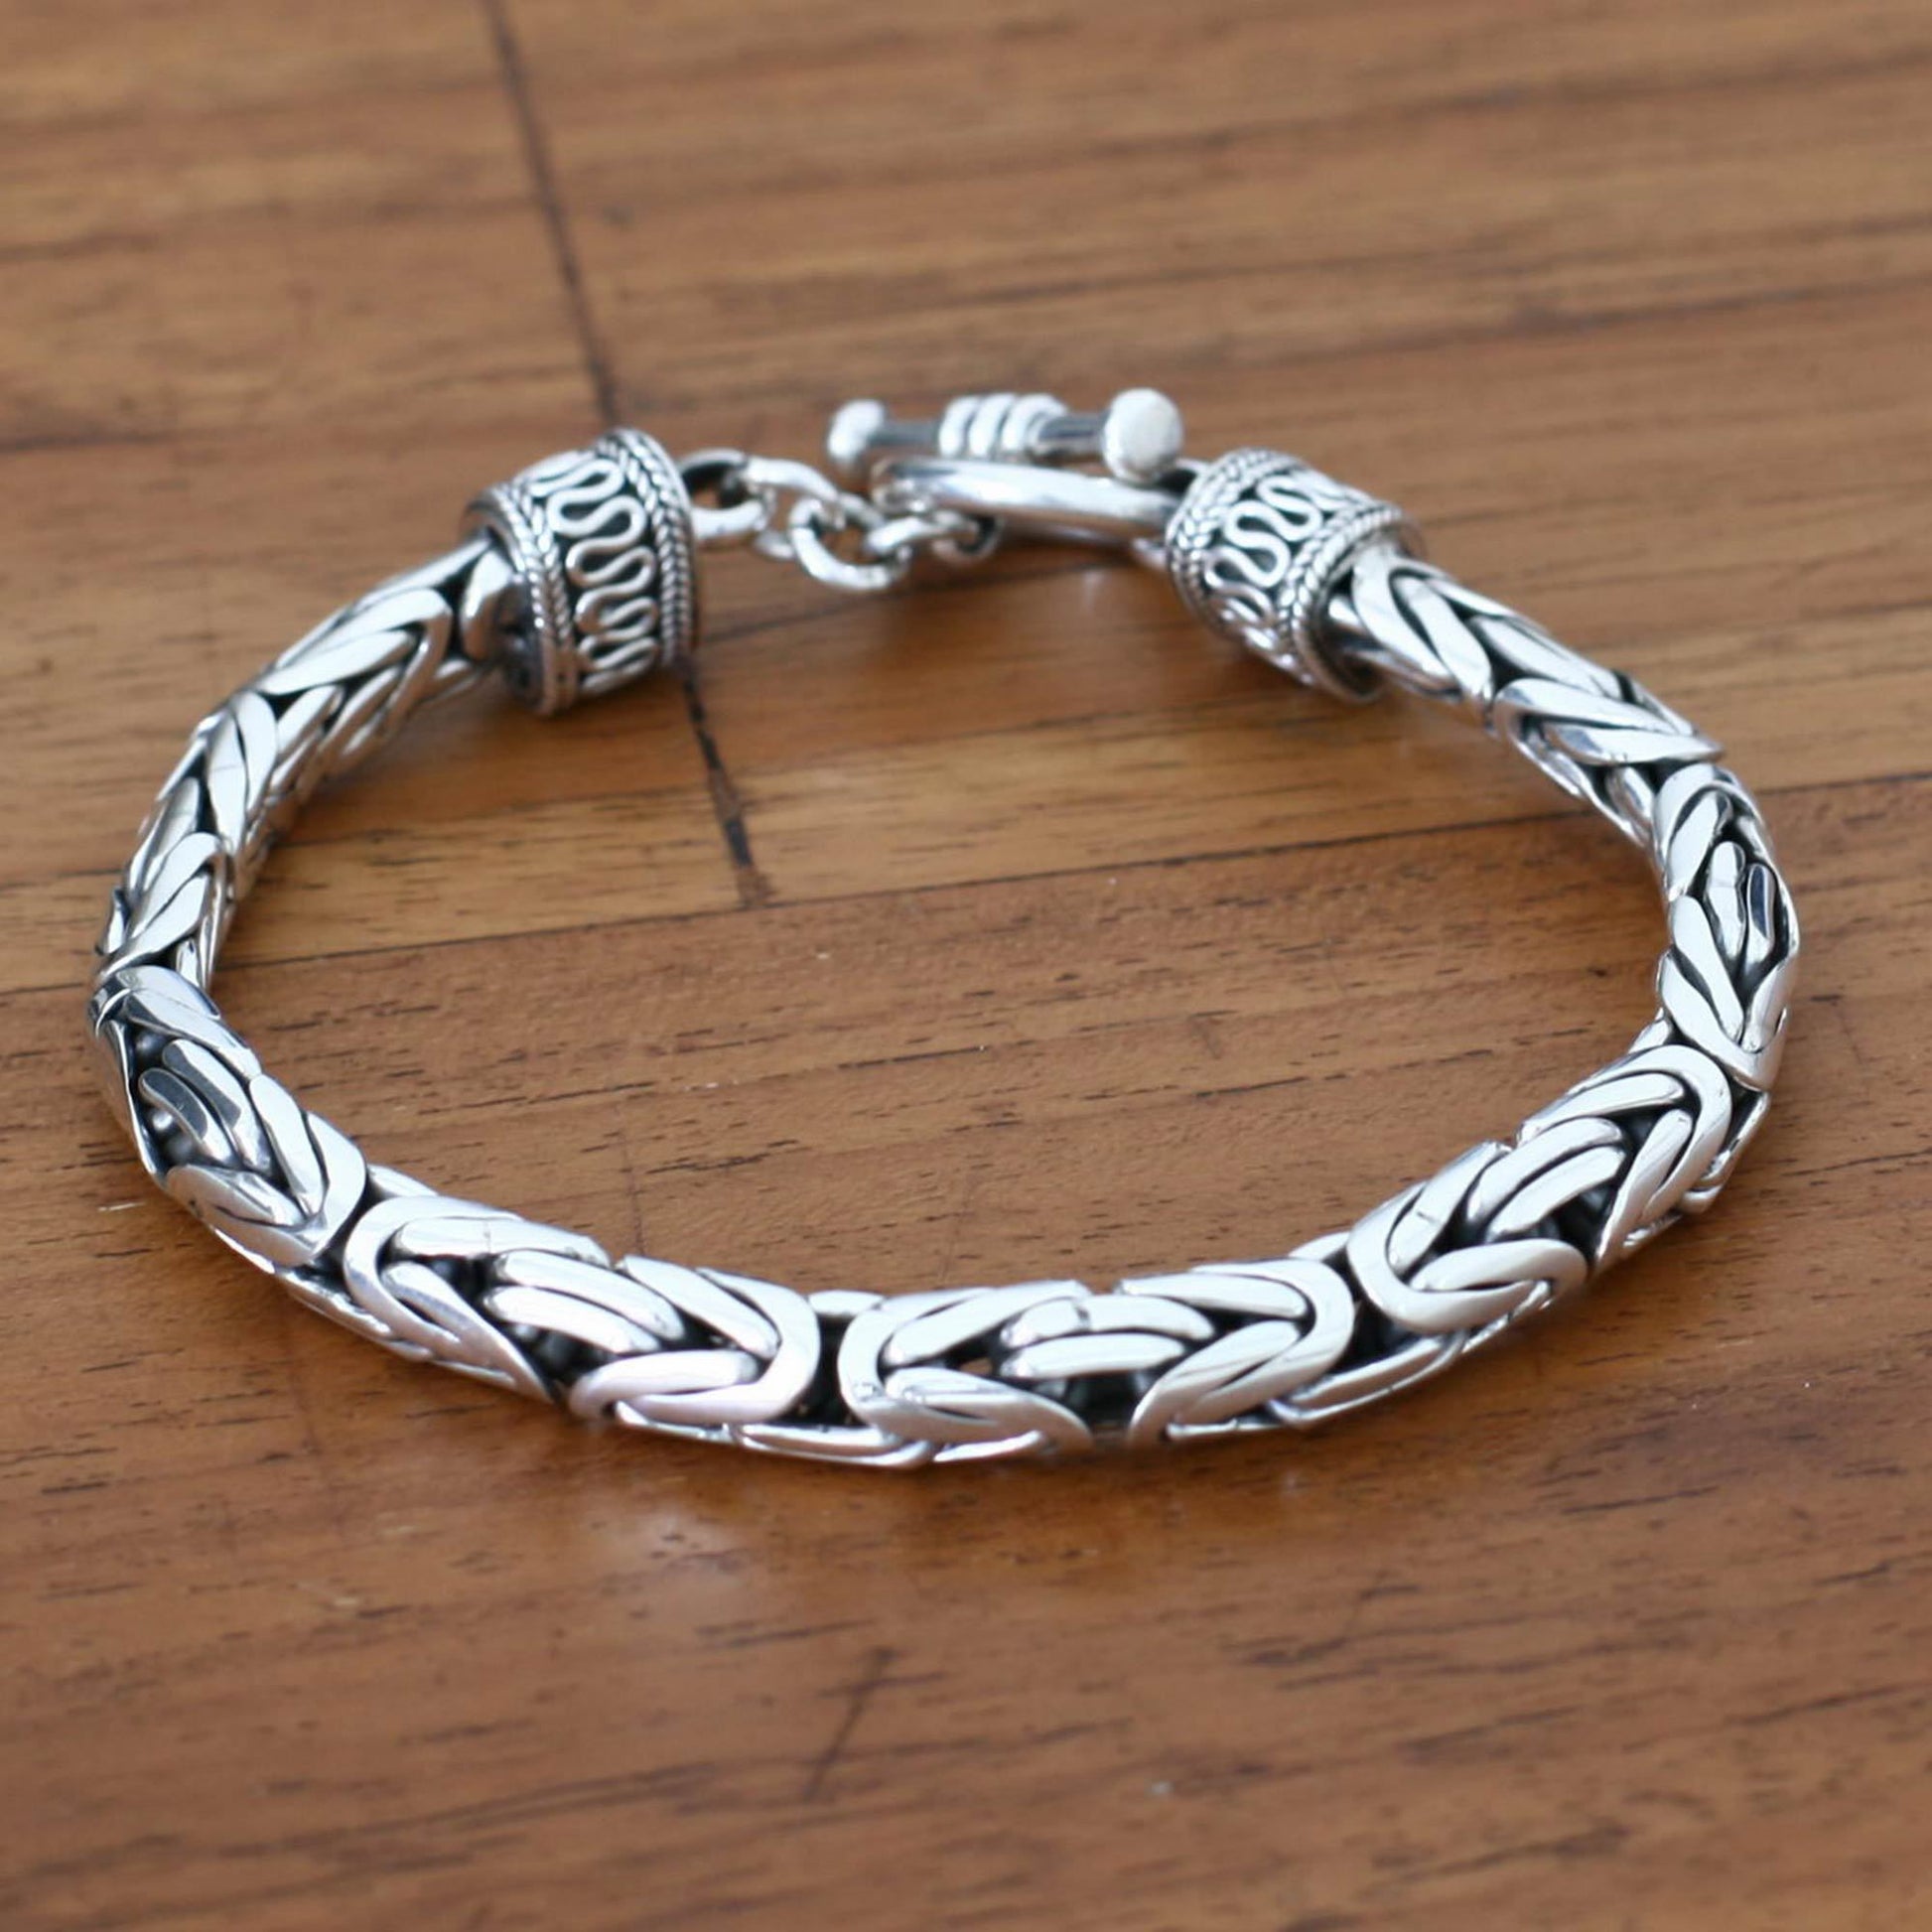 NOVICA - Men's Sterling Silver Dragon Chain Bracelet